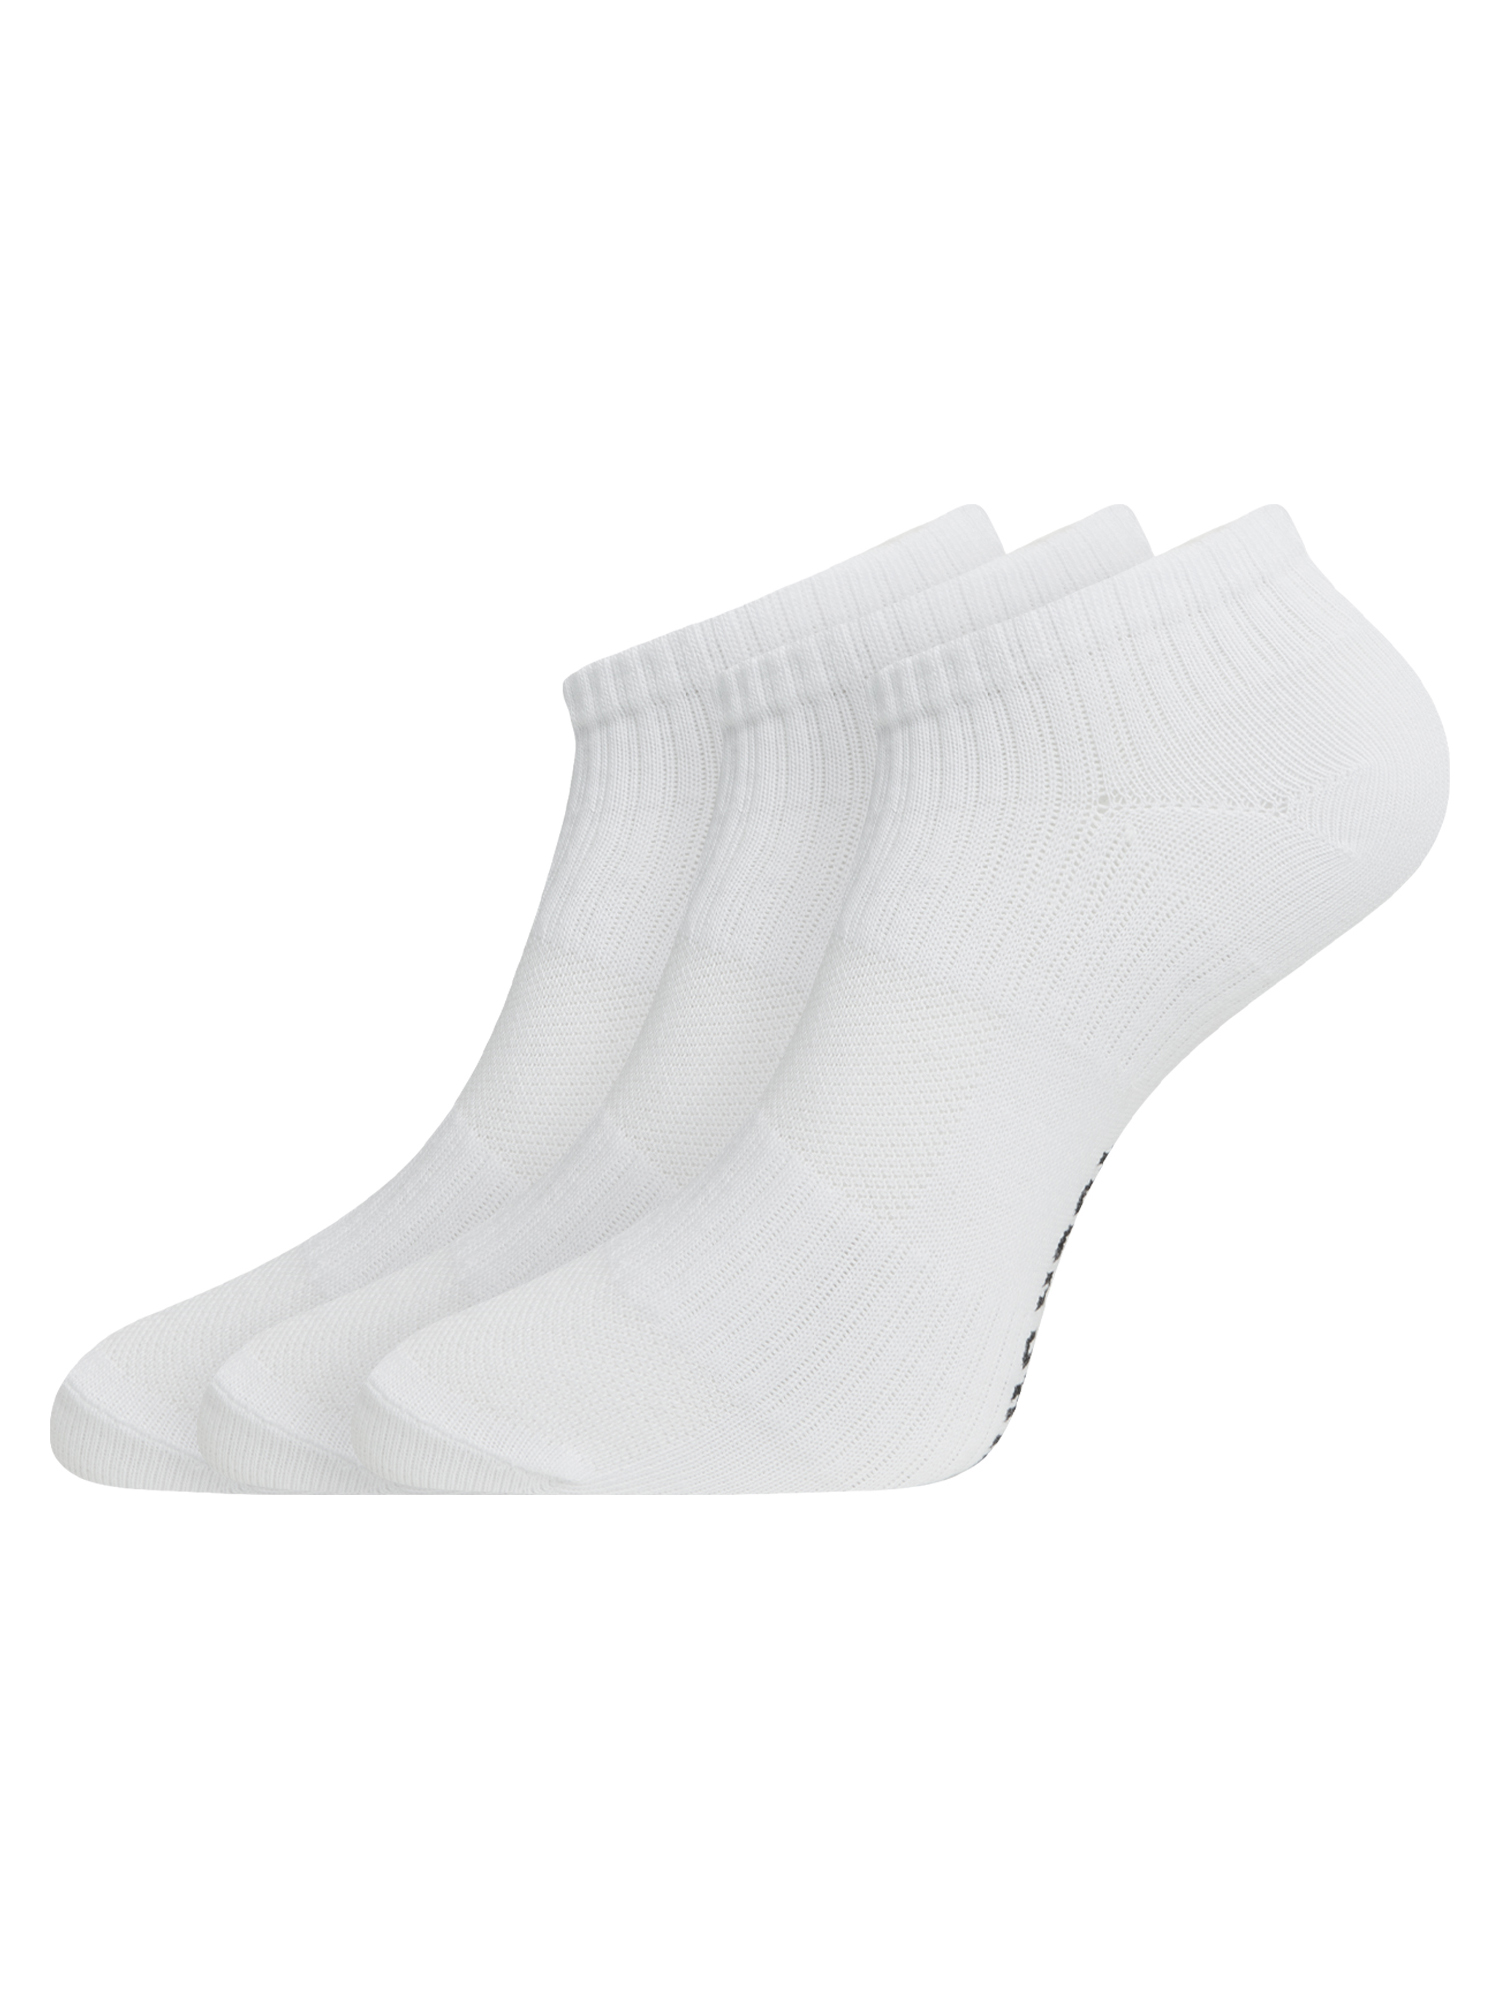 Комплект носков женских oodji 57102610T3 белых 38-40